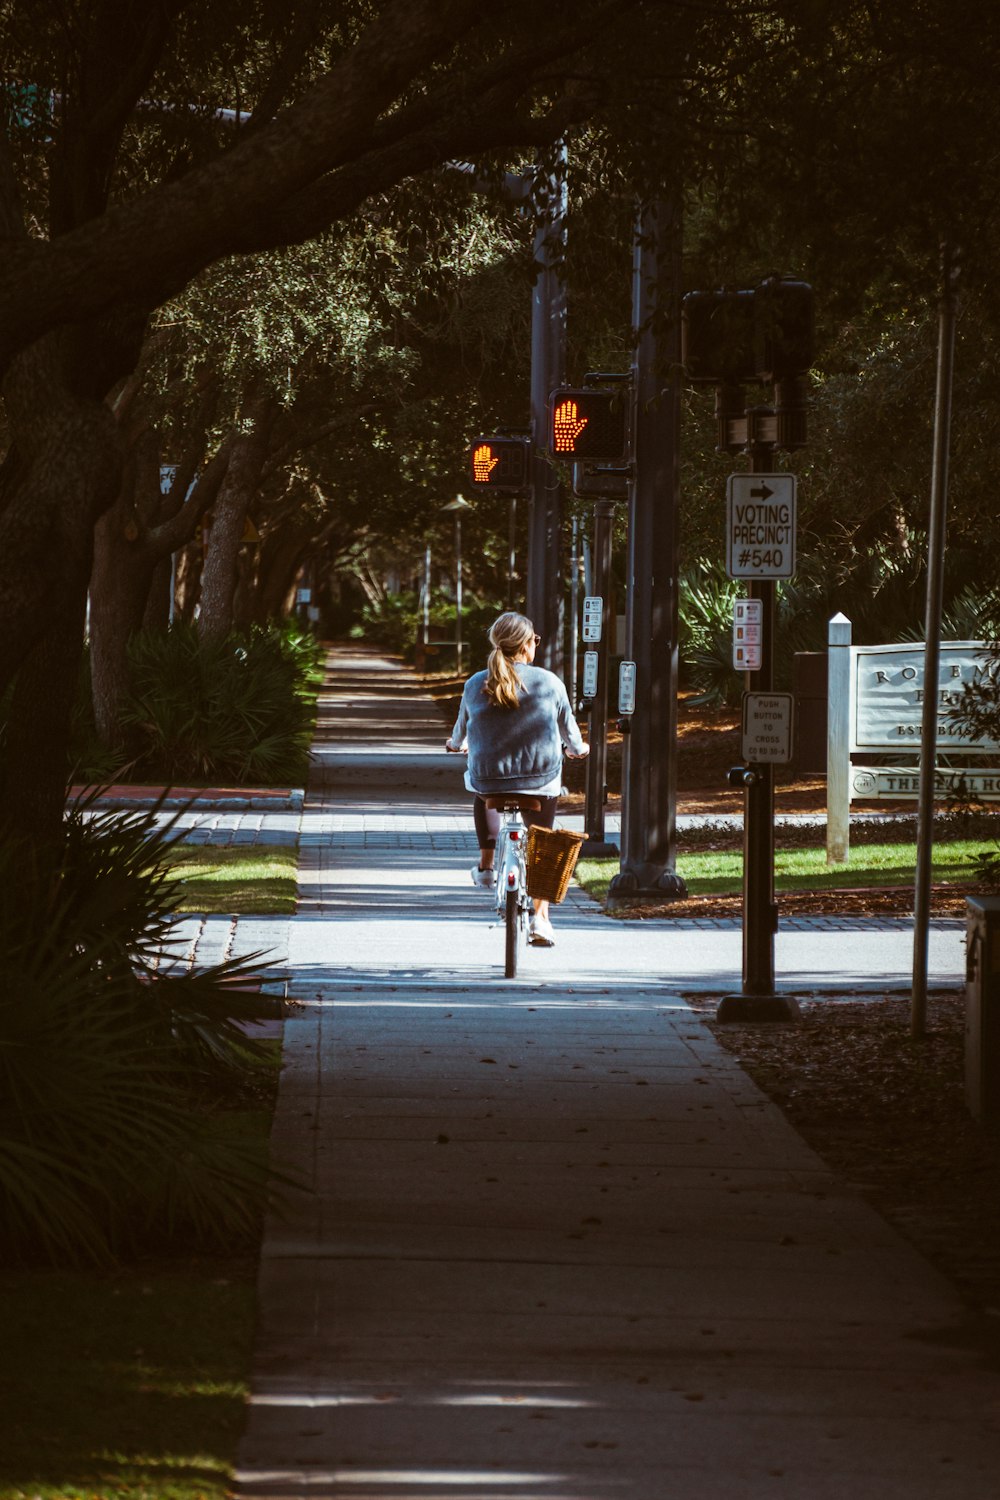 mulher que anda de bicicleta na calçada perto de árvores e semáforos